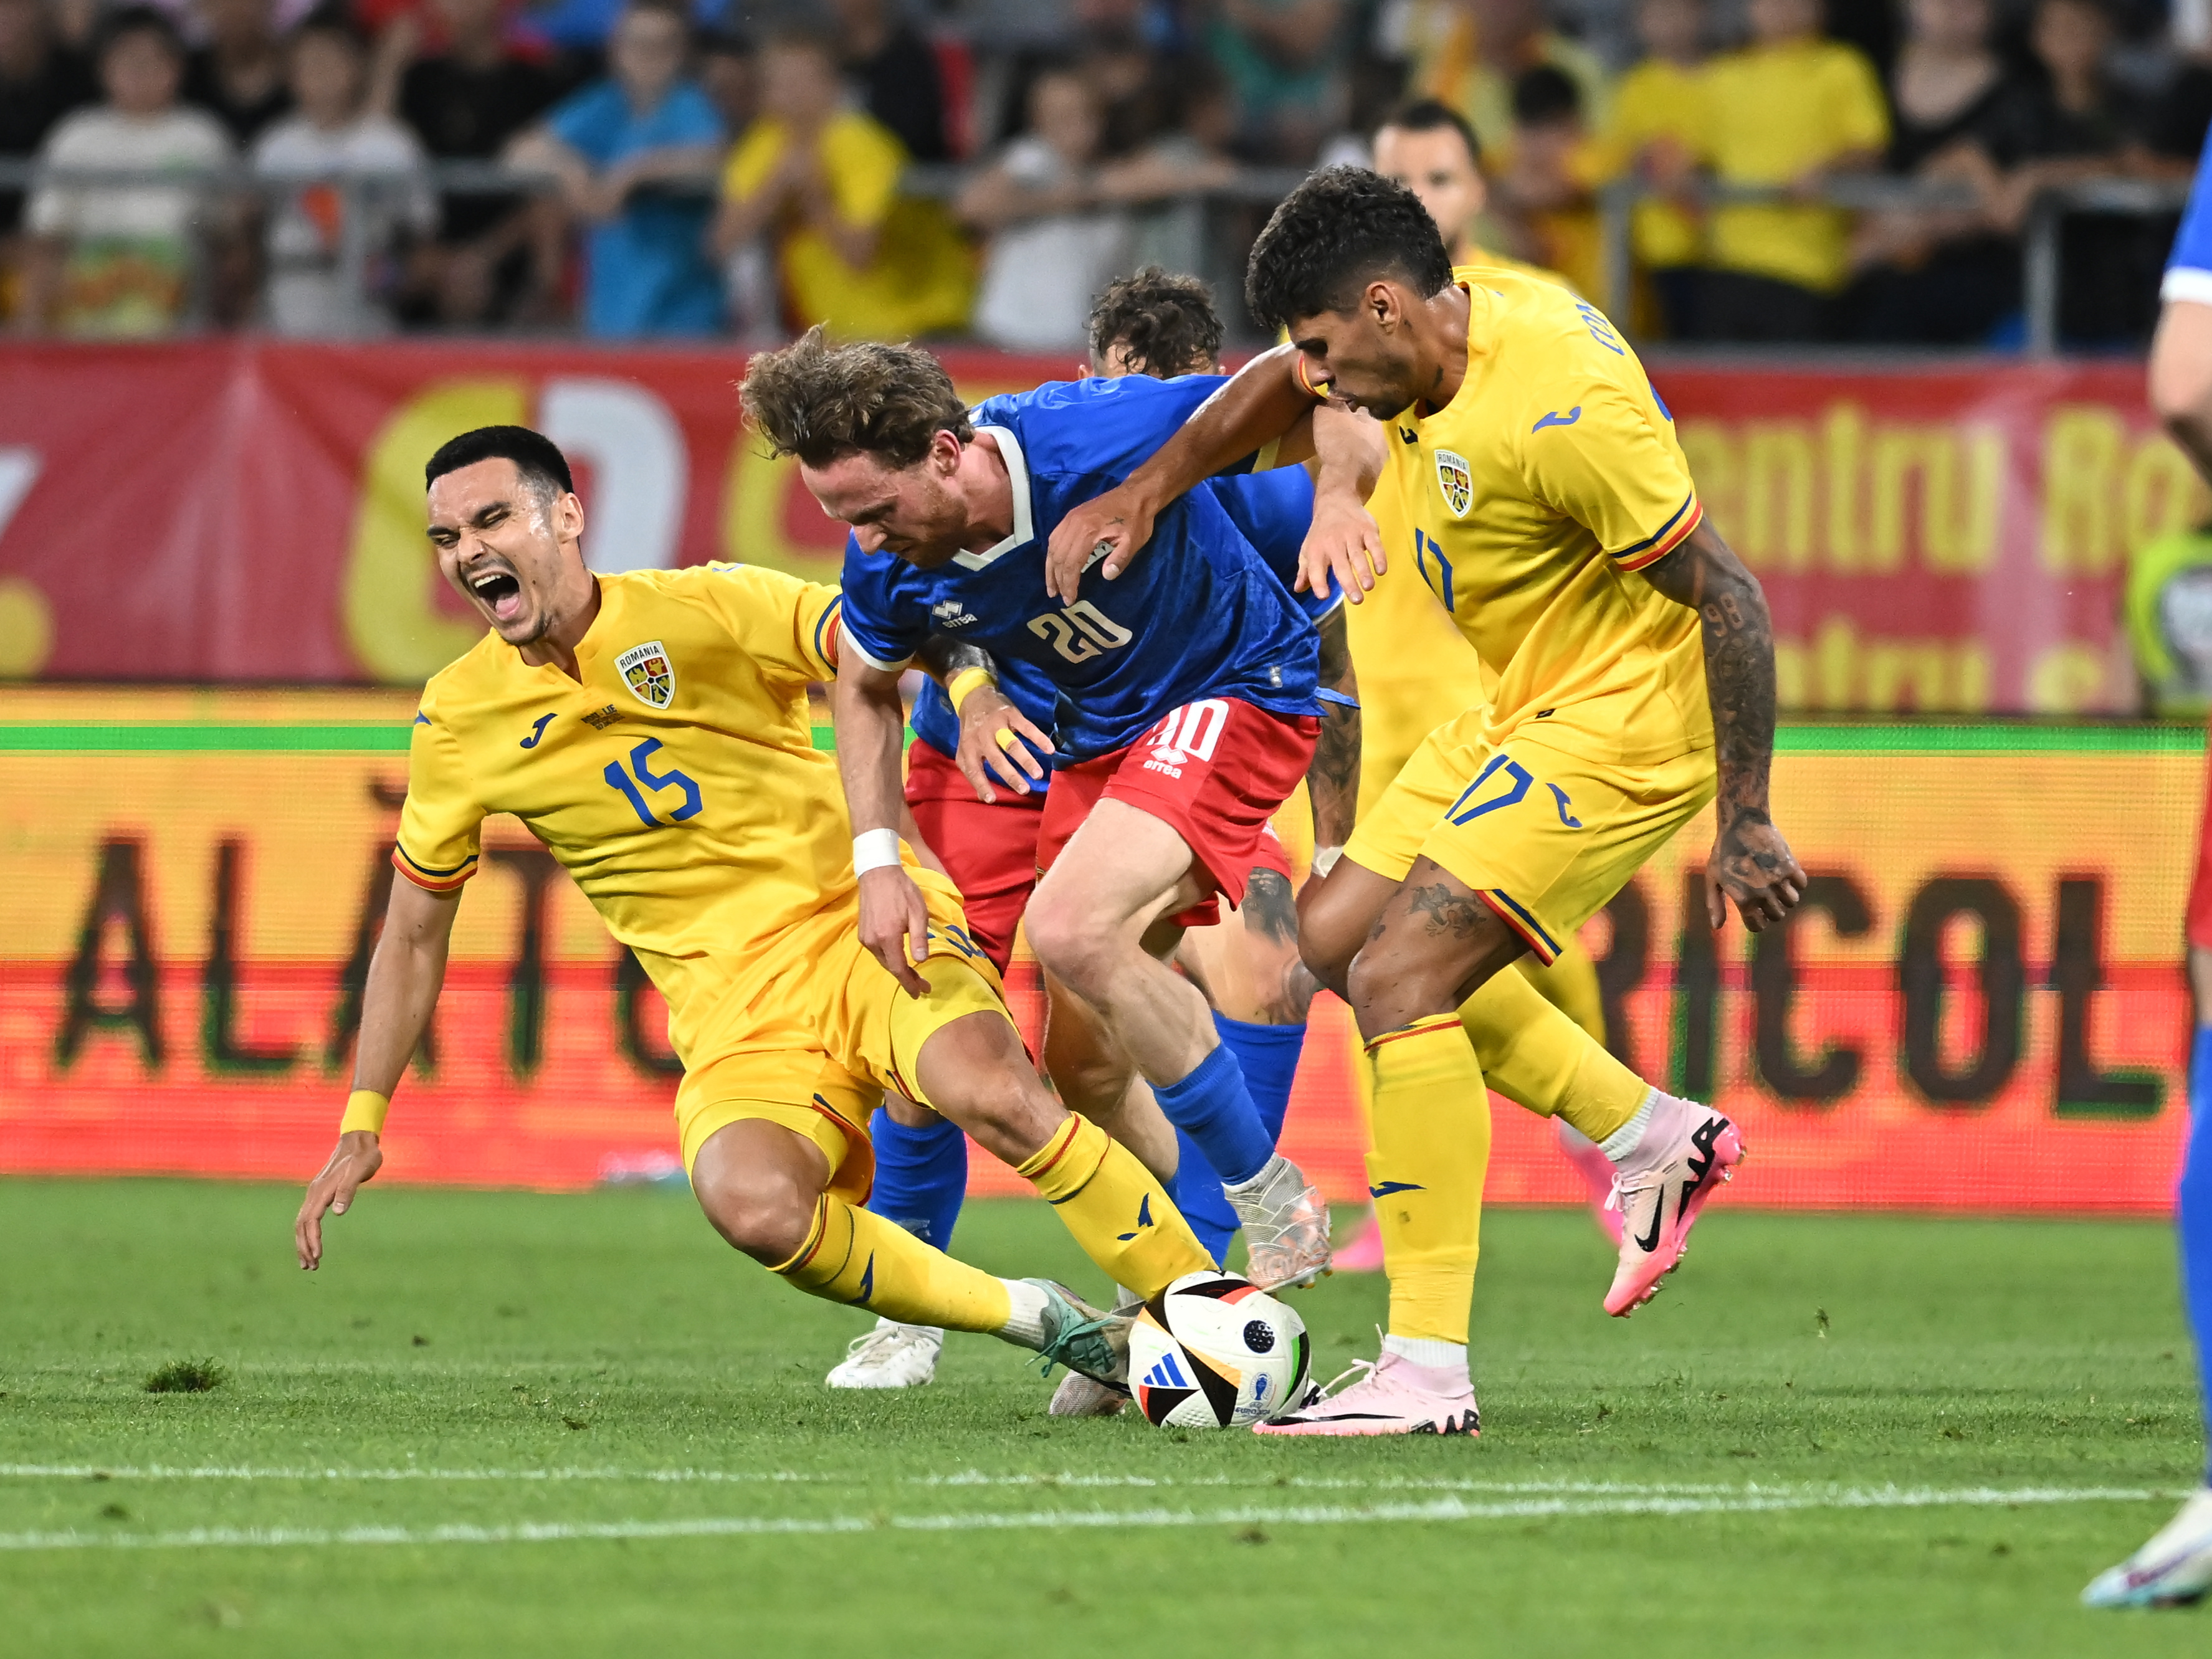 Presa din Belgia, reacție fără milă după România - Liechtenstein 0-0: ”Rușine în fața piticilor din fotbal”